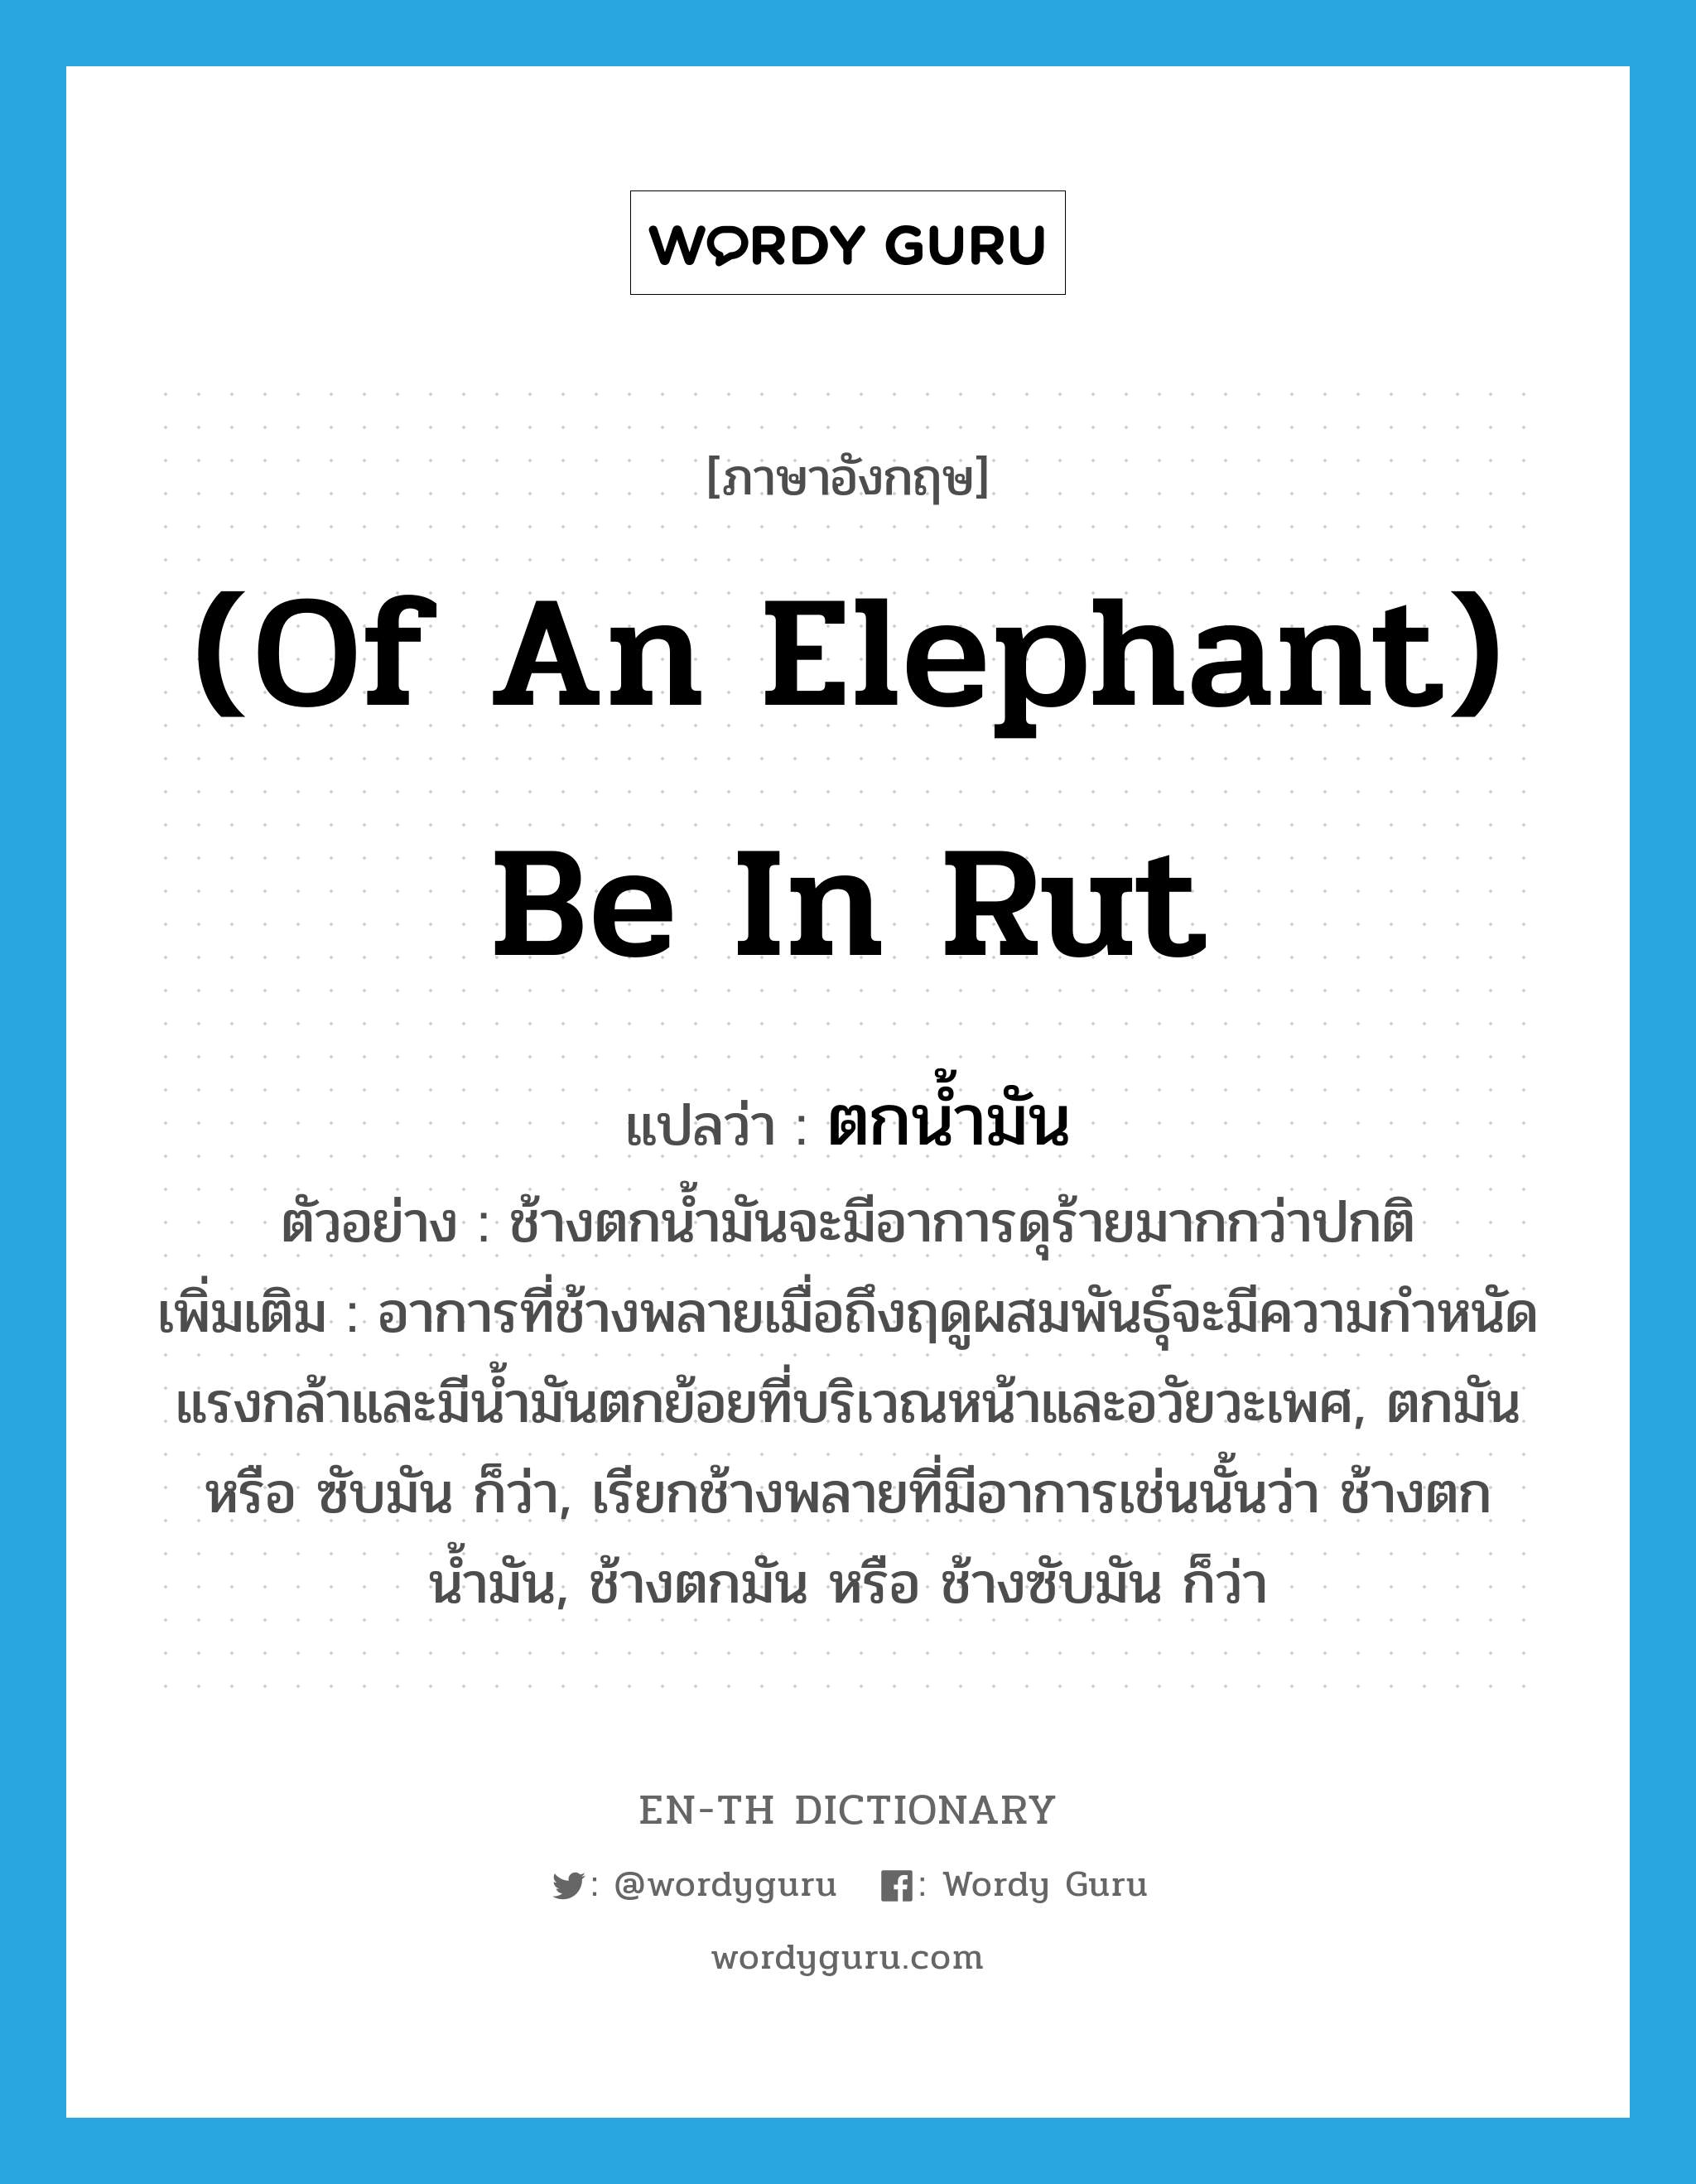 (of an elephant) be in rut แปลว่า?, คำศัพท์ภาษาอังกฤษ (of an elephant) be in rut แปลว่า ตกน้ำมัน ประเภท V ตัวอย่าง ช้างตกน้ำมันจะมีอาการดุร้ายมากกว่าปกติ เพิ่มเติม อาการที่ช้างพลายเมื่อถึงฤดูผสมพันธุ์จะมีความกำหนัดแรงกล้าและมีน้ำมันตกย้อยที่บริเวณหน้าและอวัยวะเพศ, ตกมัน หรือ ซับมัน ก็ว่า, เรียกช้างพลายที่มีอาการเช่นนั้นว่า ช้างตกน้ำมัน, ช้างตกมัน หรือ ช้างซับมัน ก็ว่า หมวด V